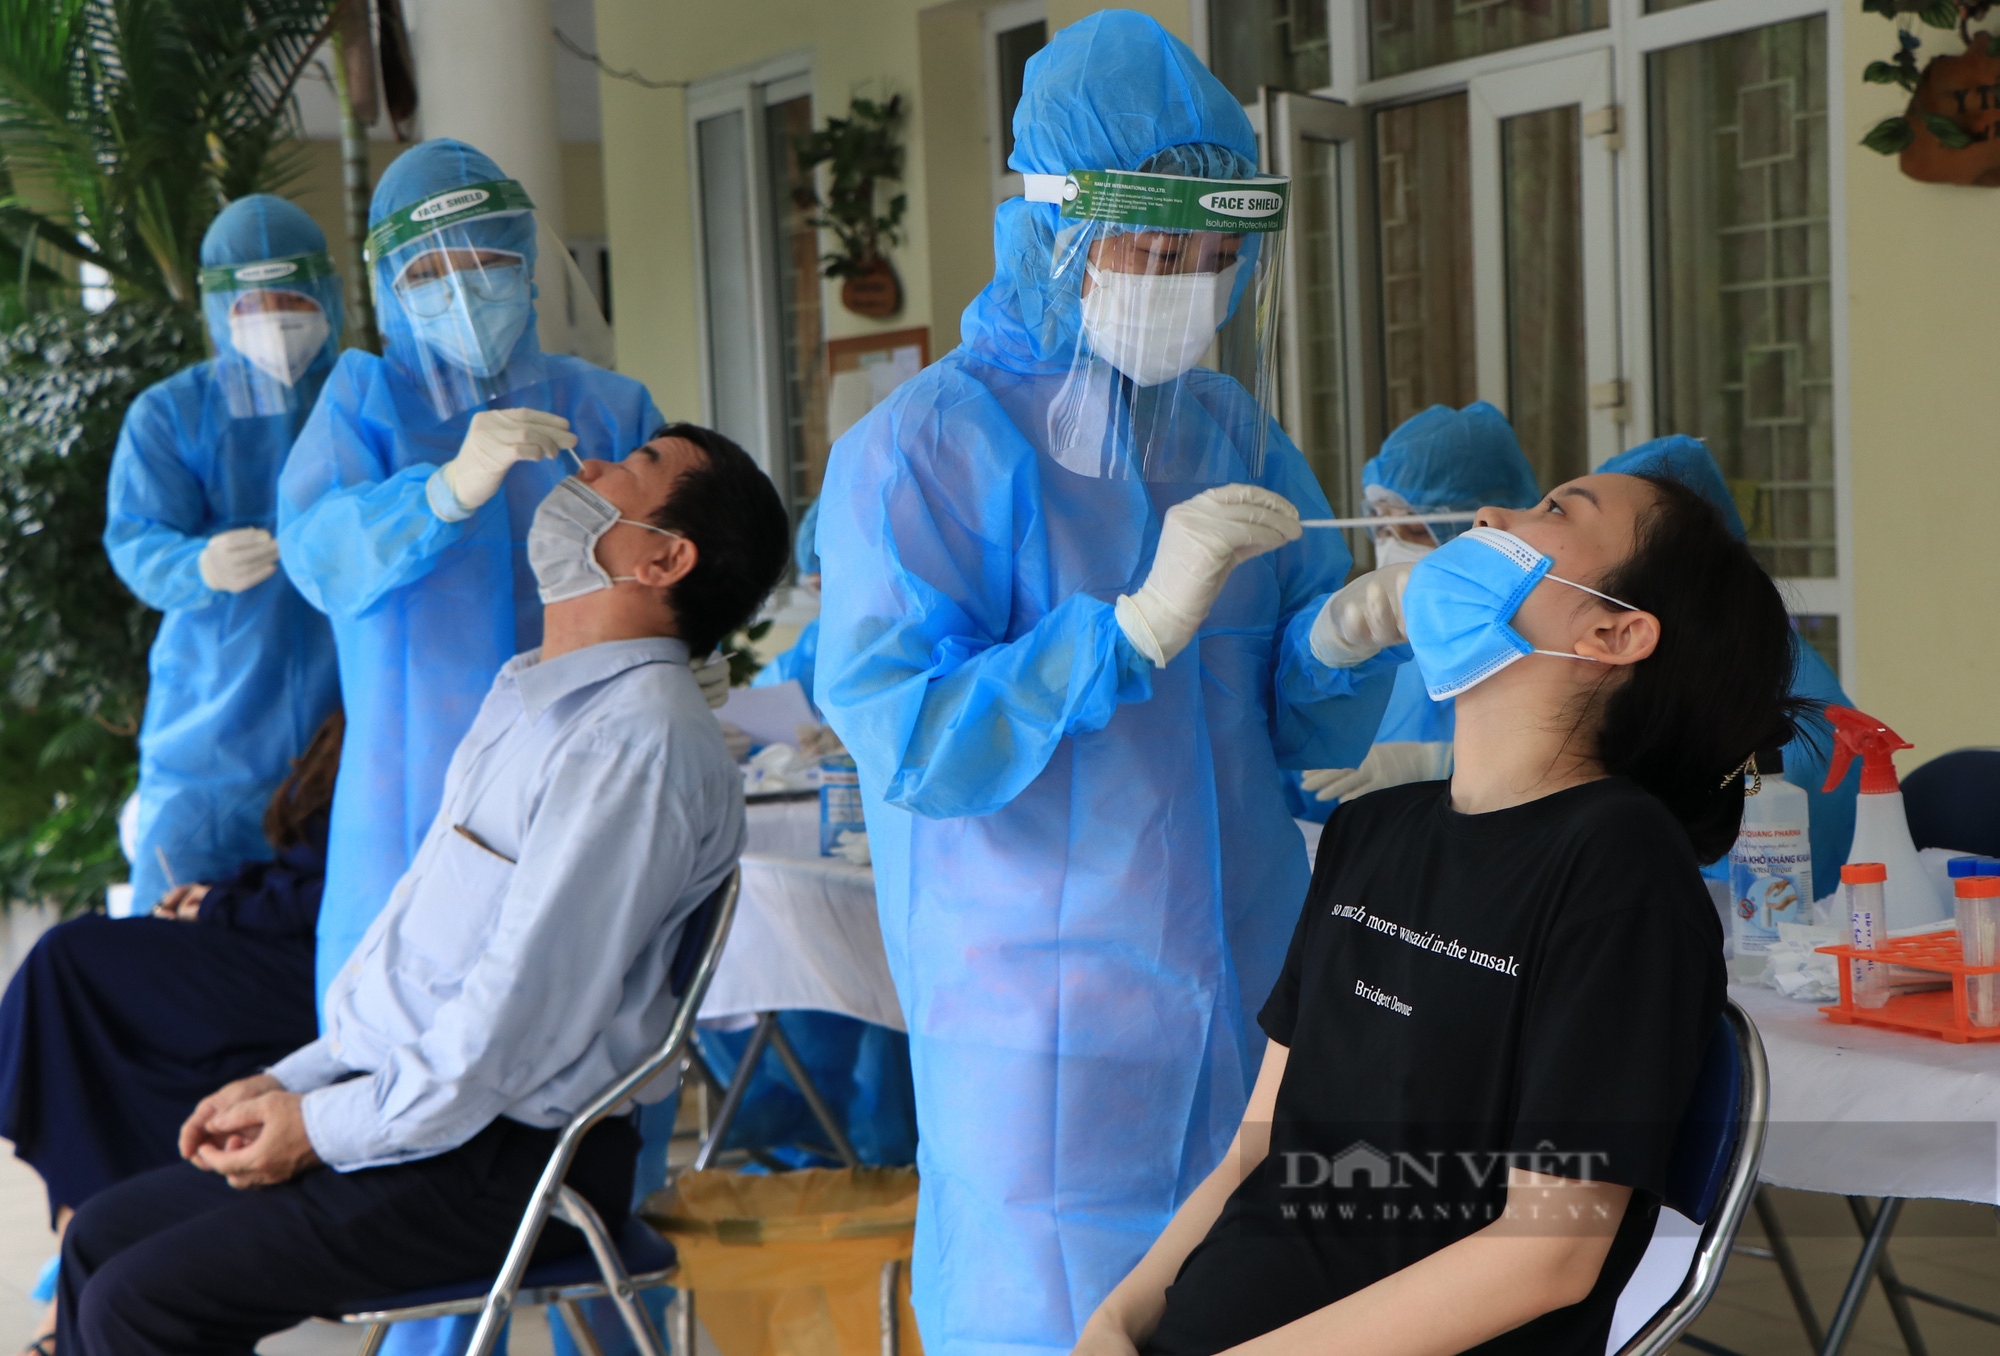 Phó giám đốc CDC Hà Nội nói gì khi nhân viên y tế lấy nhiều mẫu xét nghiệm chỉ dùng 1 đôi găng tay? - Ảnh 1.